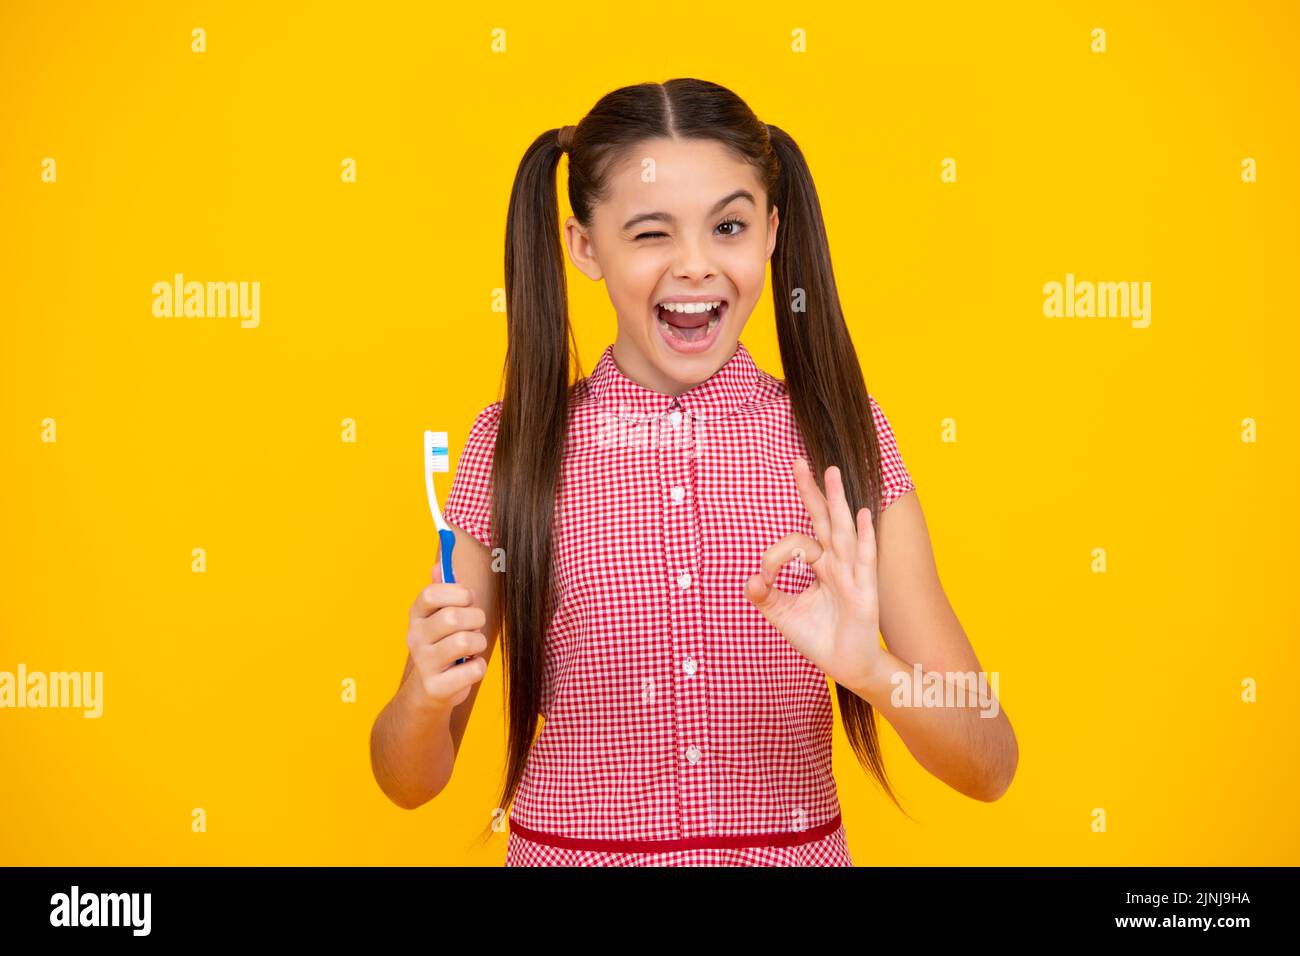 Adolescent stupéfié. Une adolescente se brossant les dents sur un fond jaune isolé. Brosse à dents d'hygiène quotidienne pour adolescents, routine du matin. Dentaire Banque D'Images